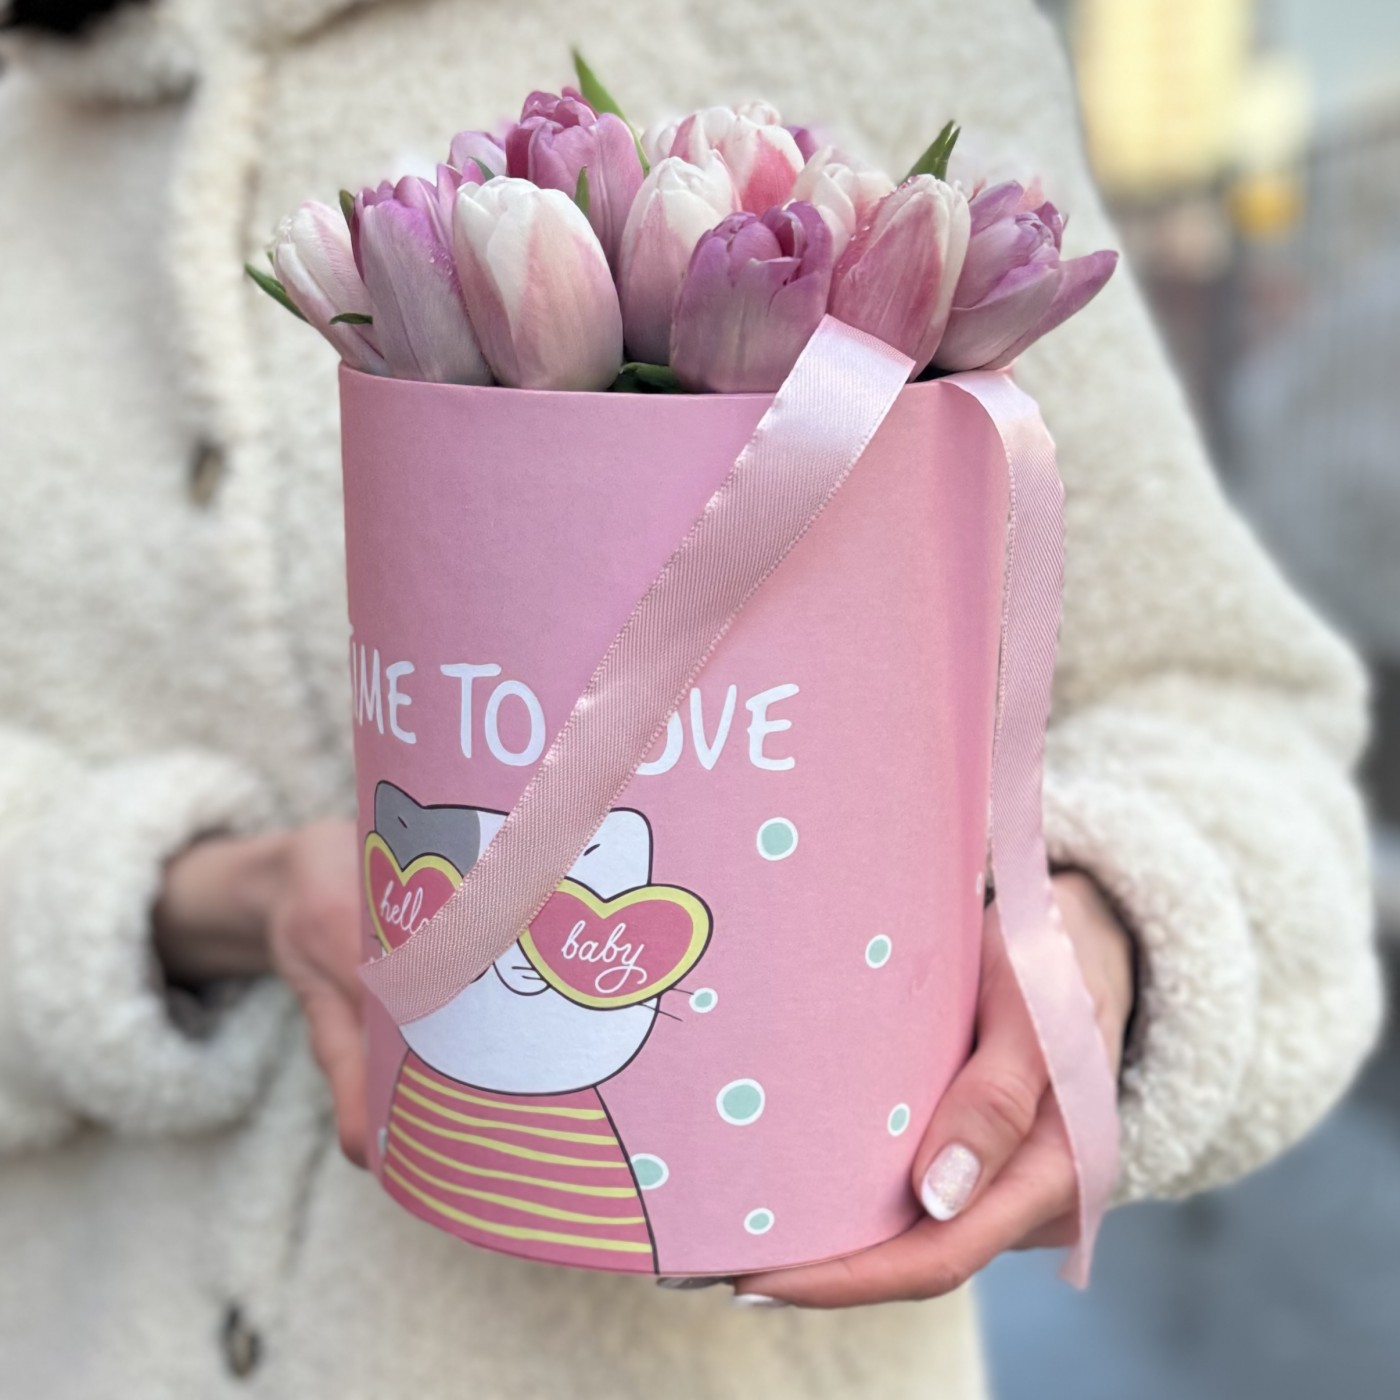 25 нежных розовых тюльпанов в коробке с котиком